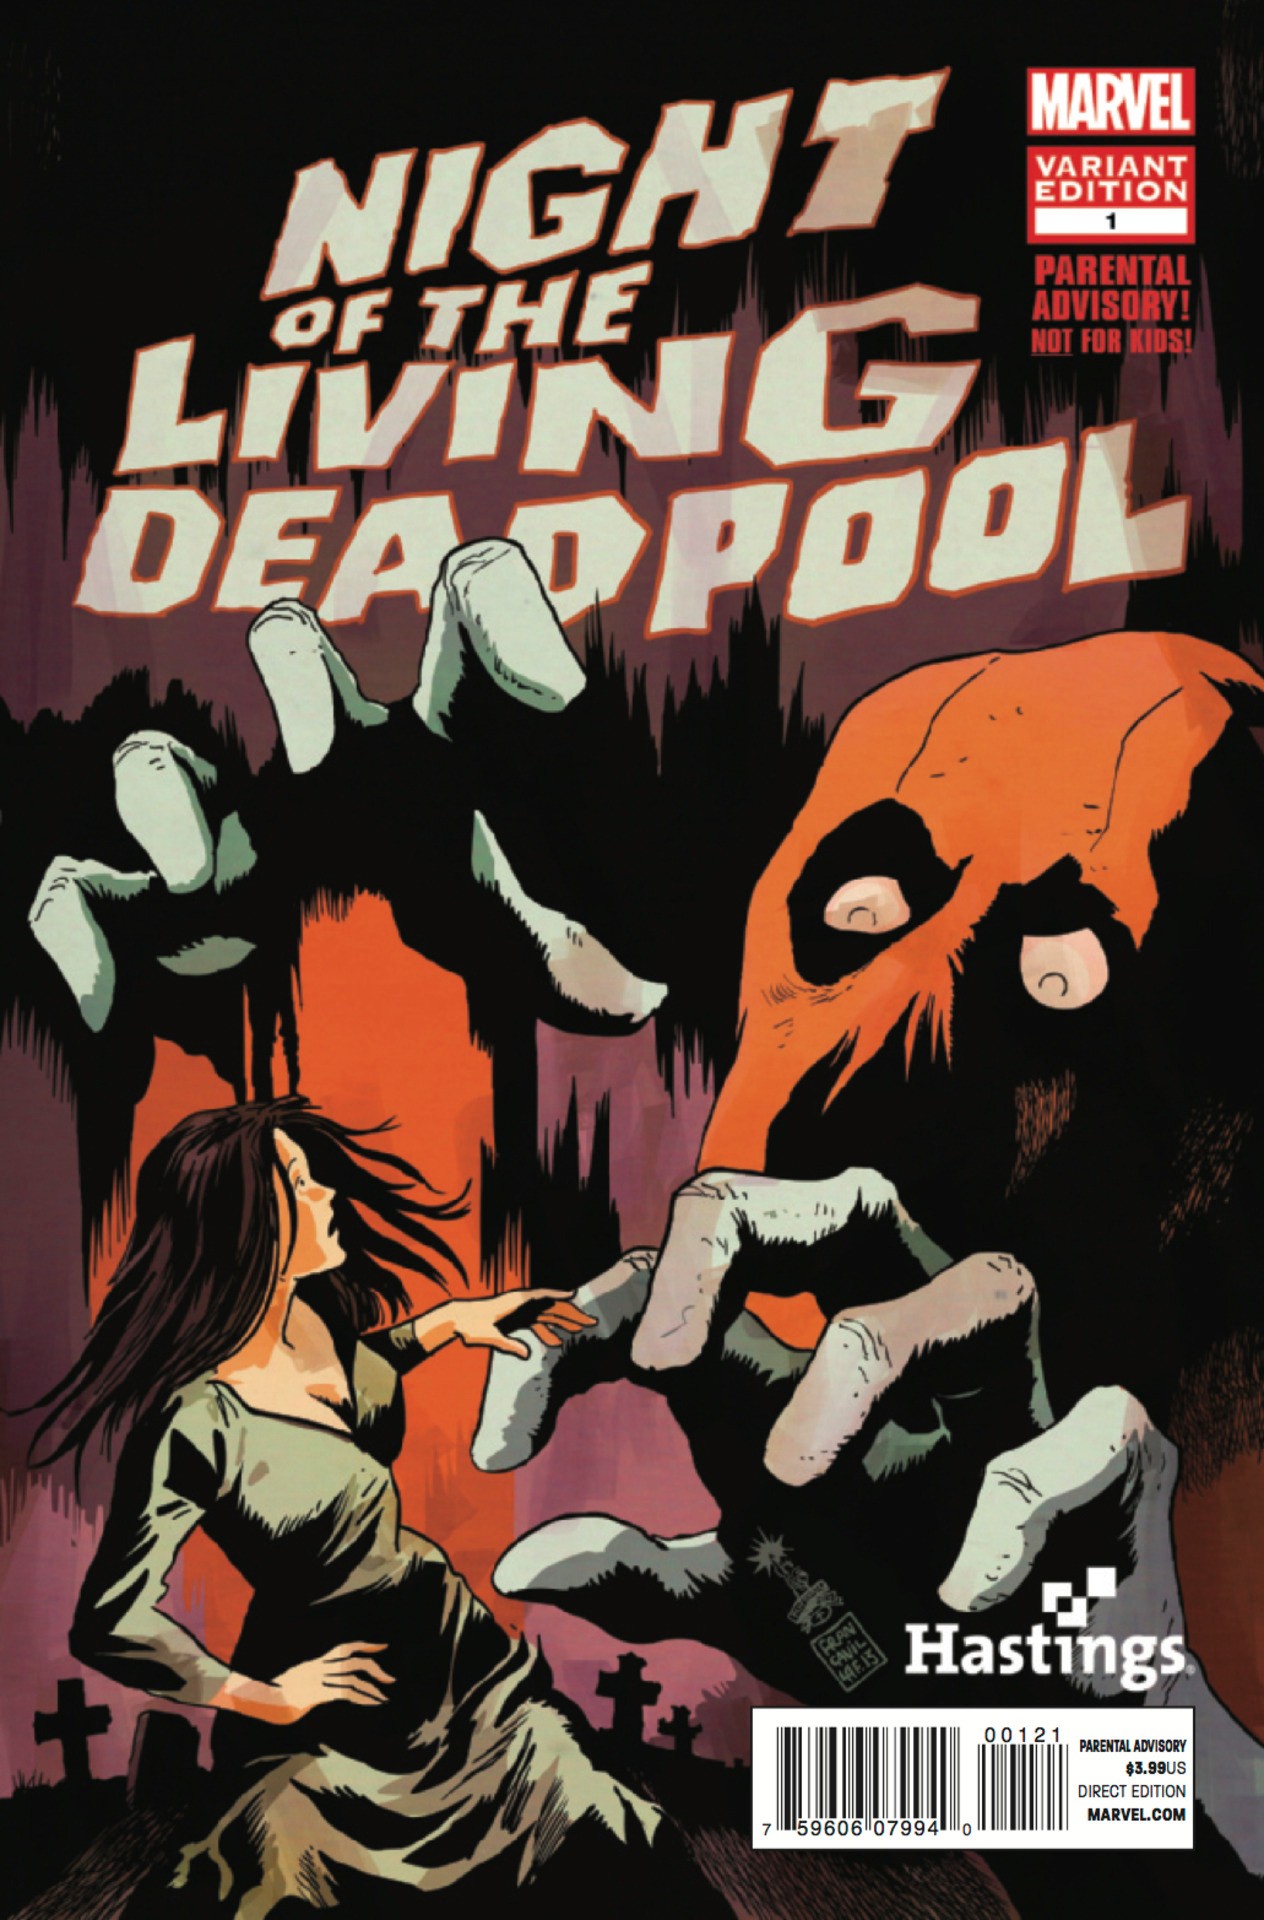 La notte dei Deadpool viventi, tra battute e apocalisse zombie